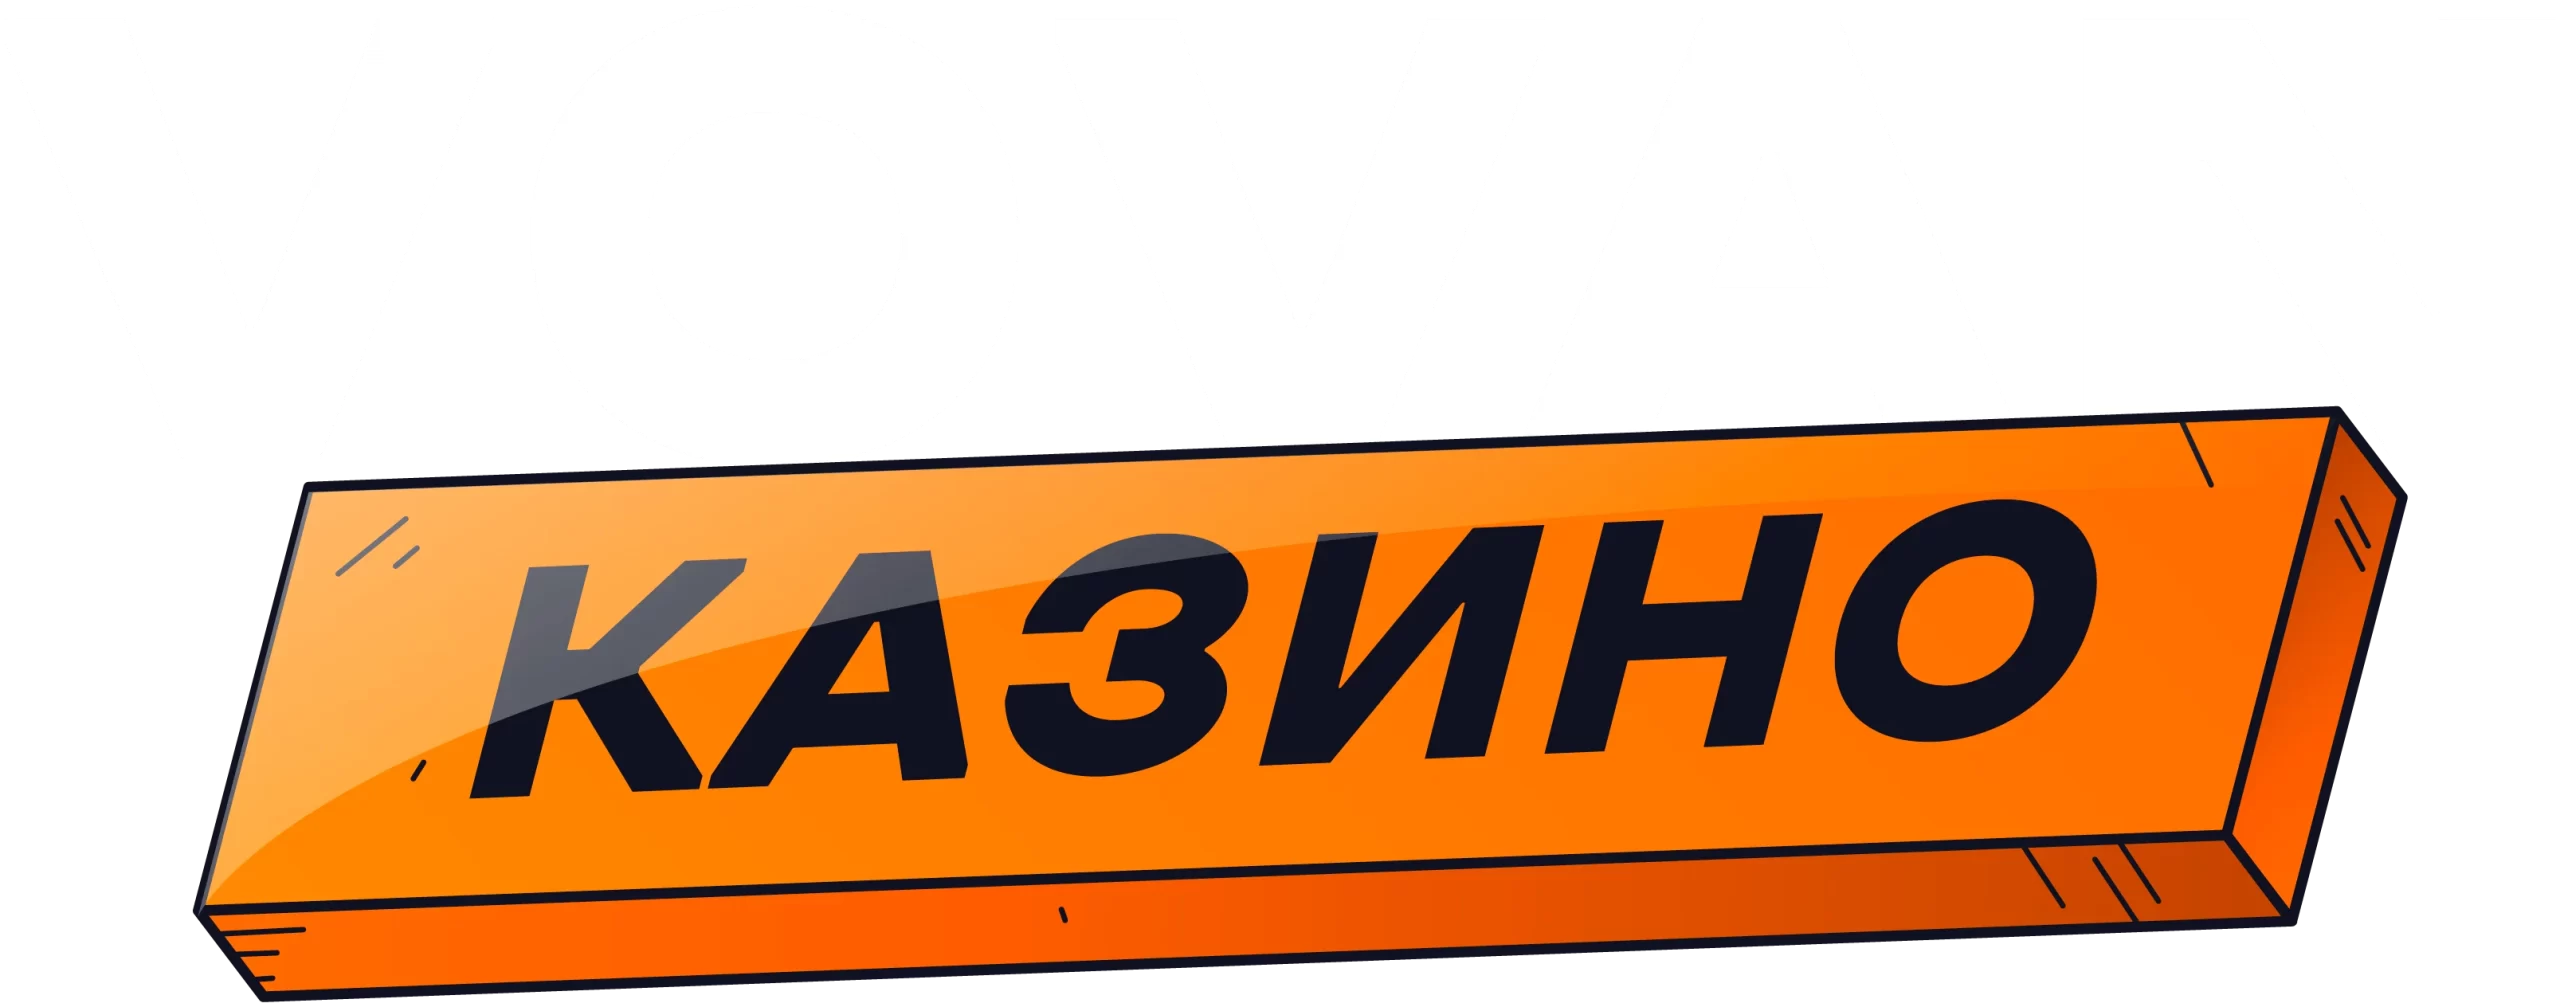 Vovan casino logo